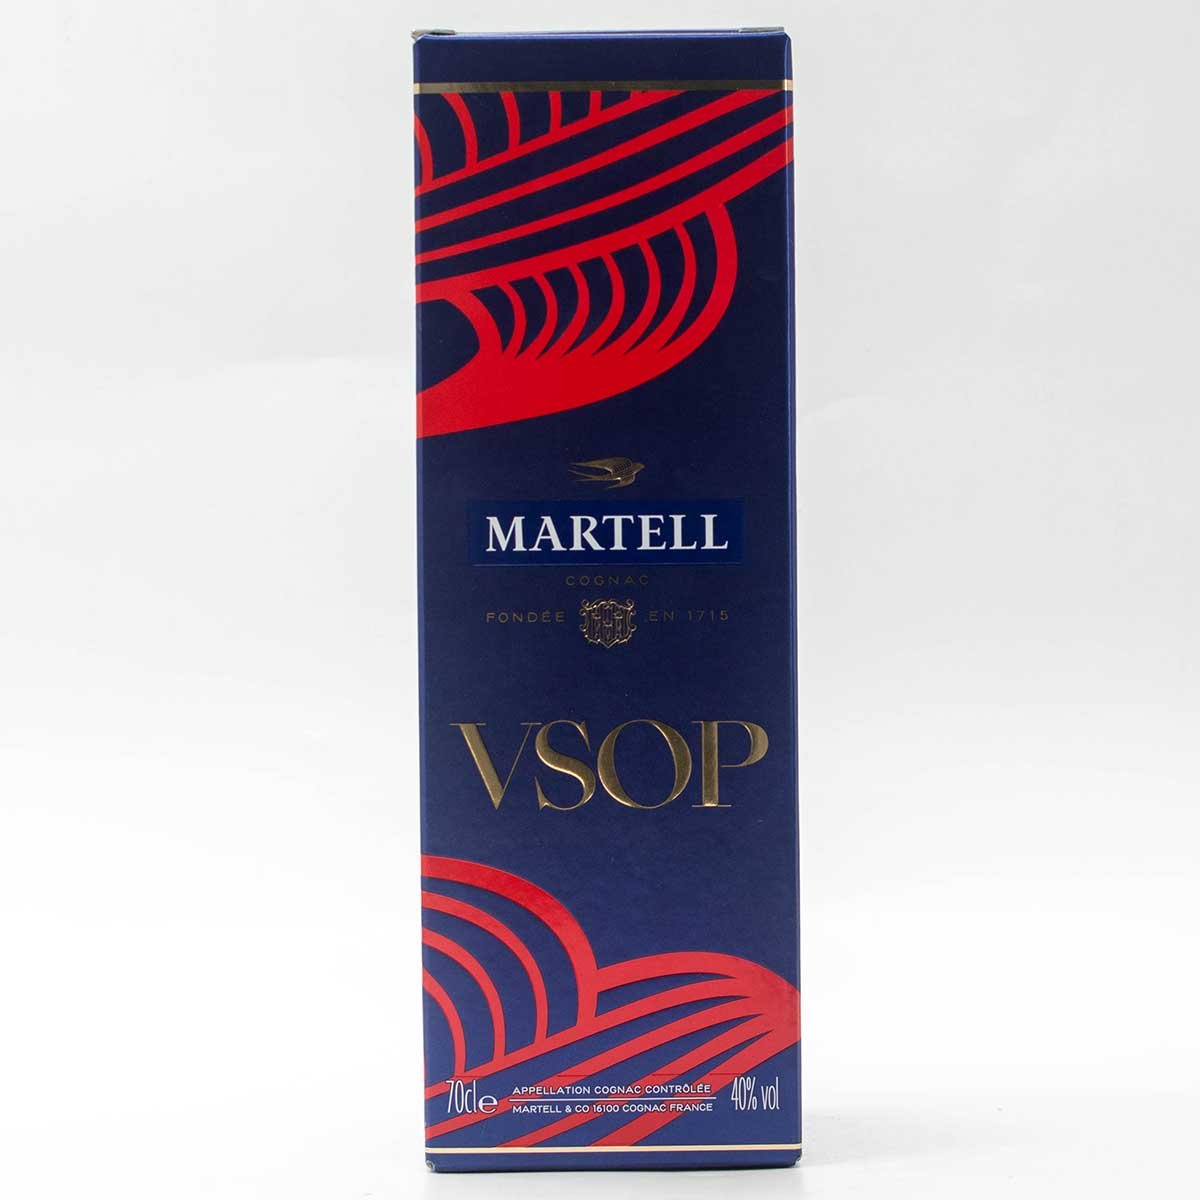 Мартель ВСОП 0,7 Л. Коньяк Мартель VSOP 0.7. Martell VSOP 0.7 цена. Martell vsop 0.7